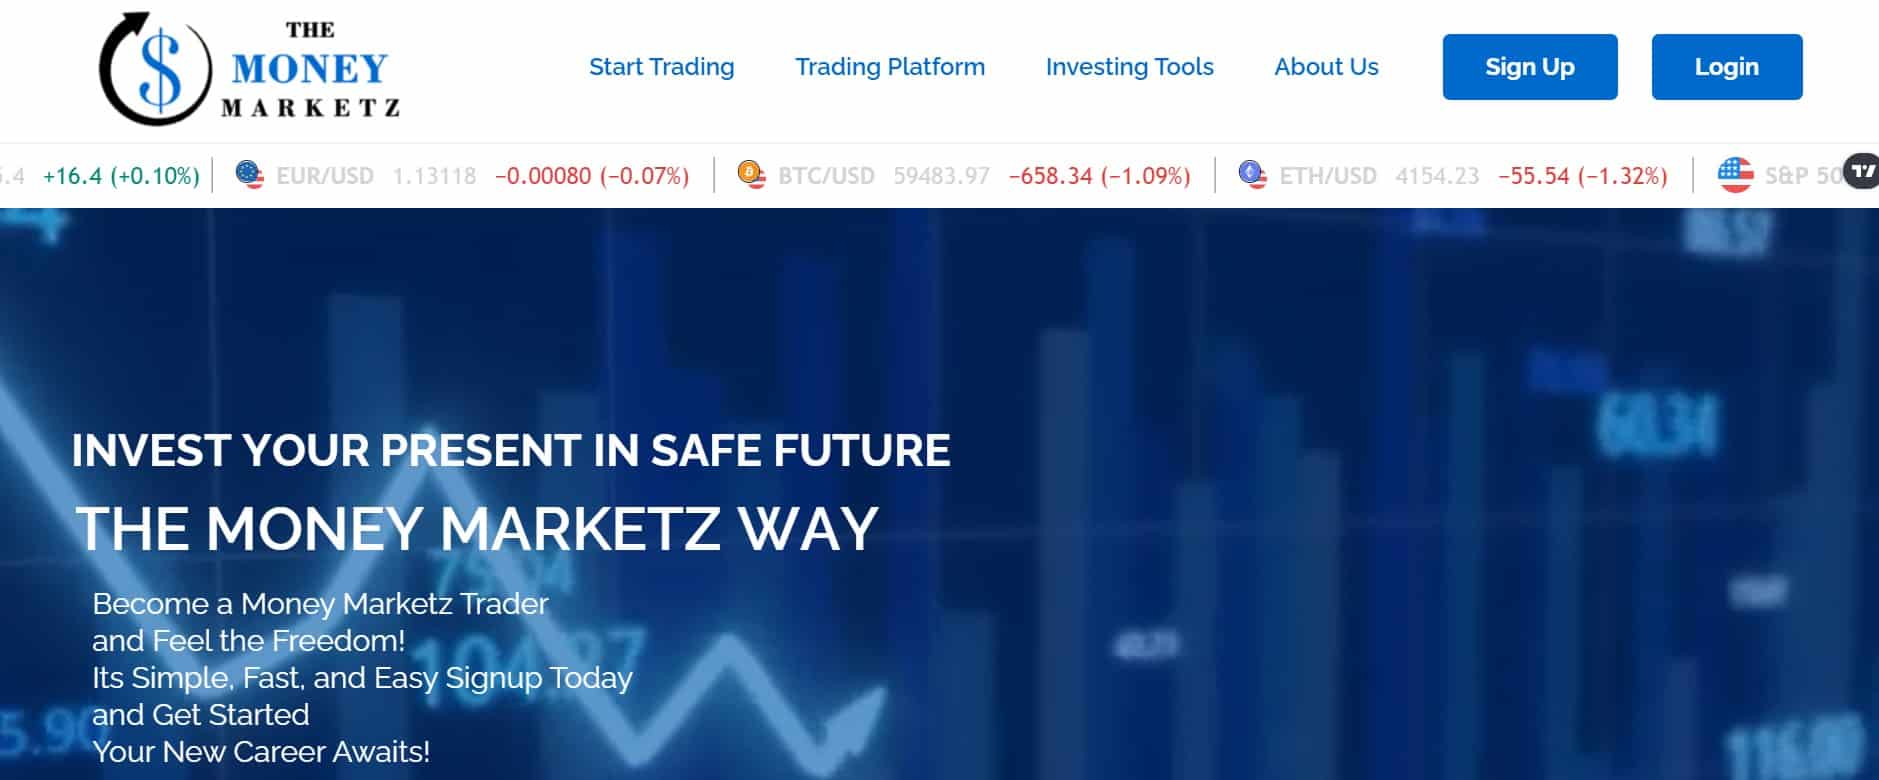 The Money Marketz website